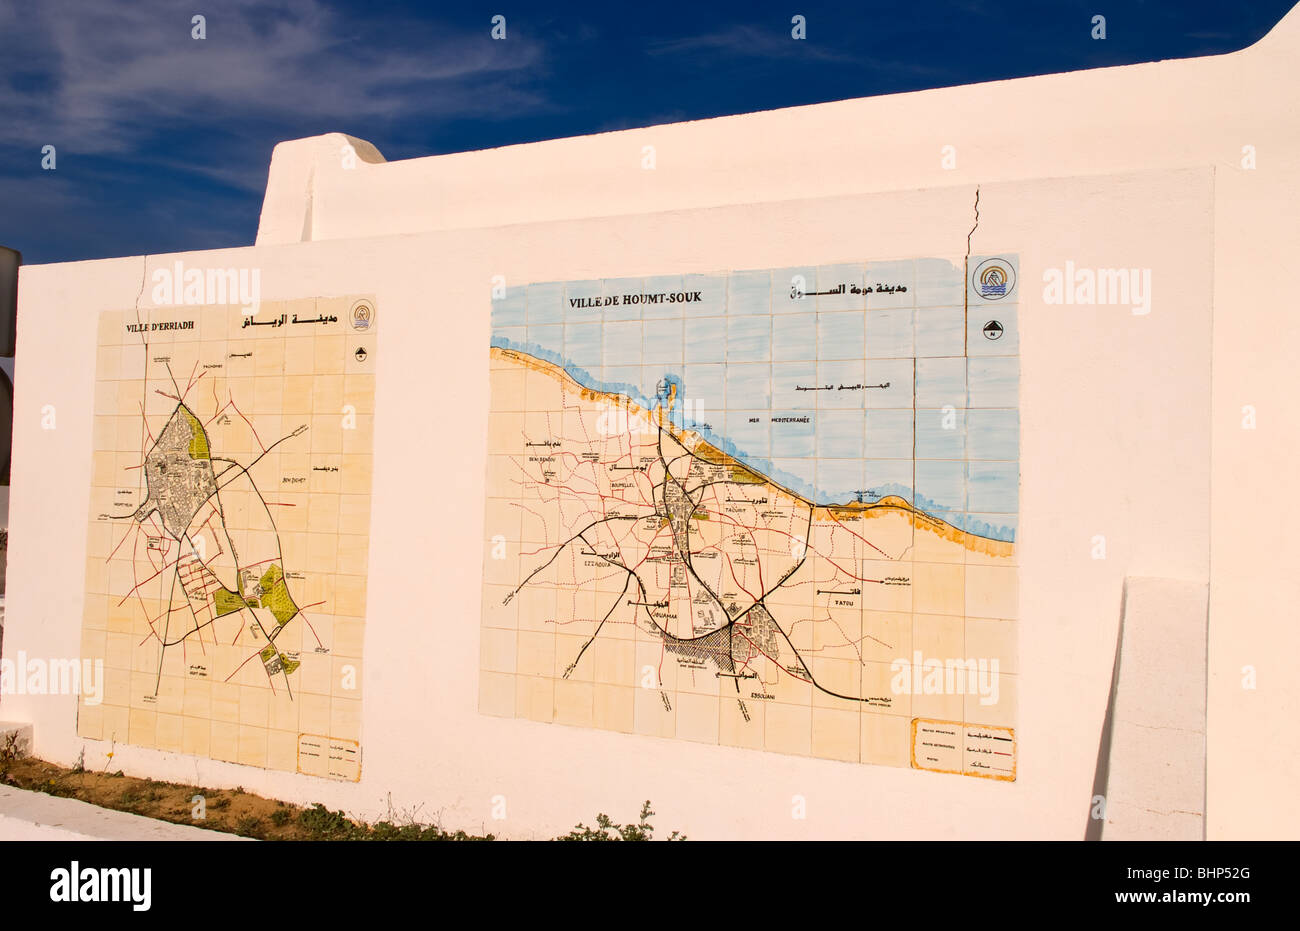 Plan de ville de Djerba Tunisie Afrique Banque D'Images